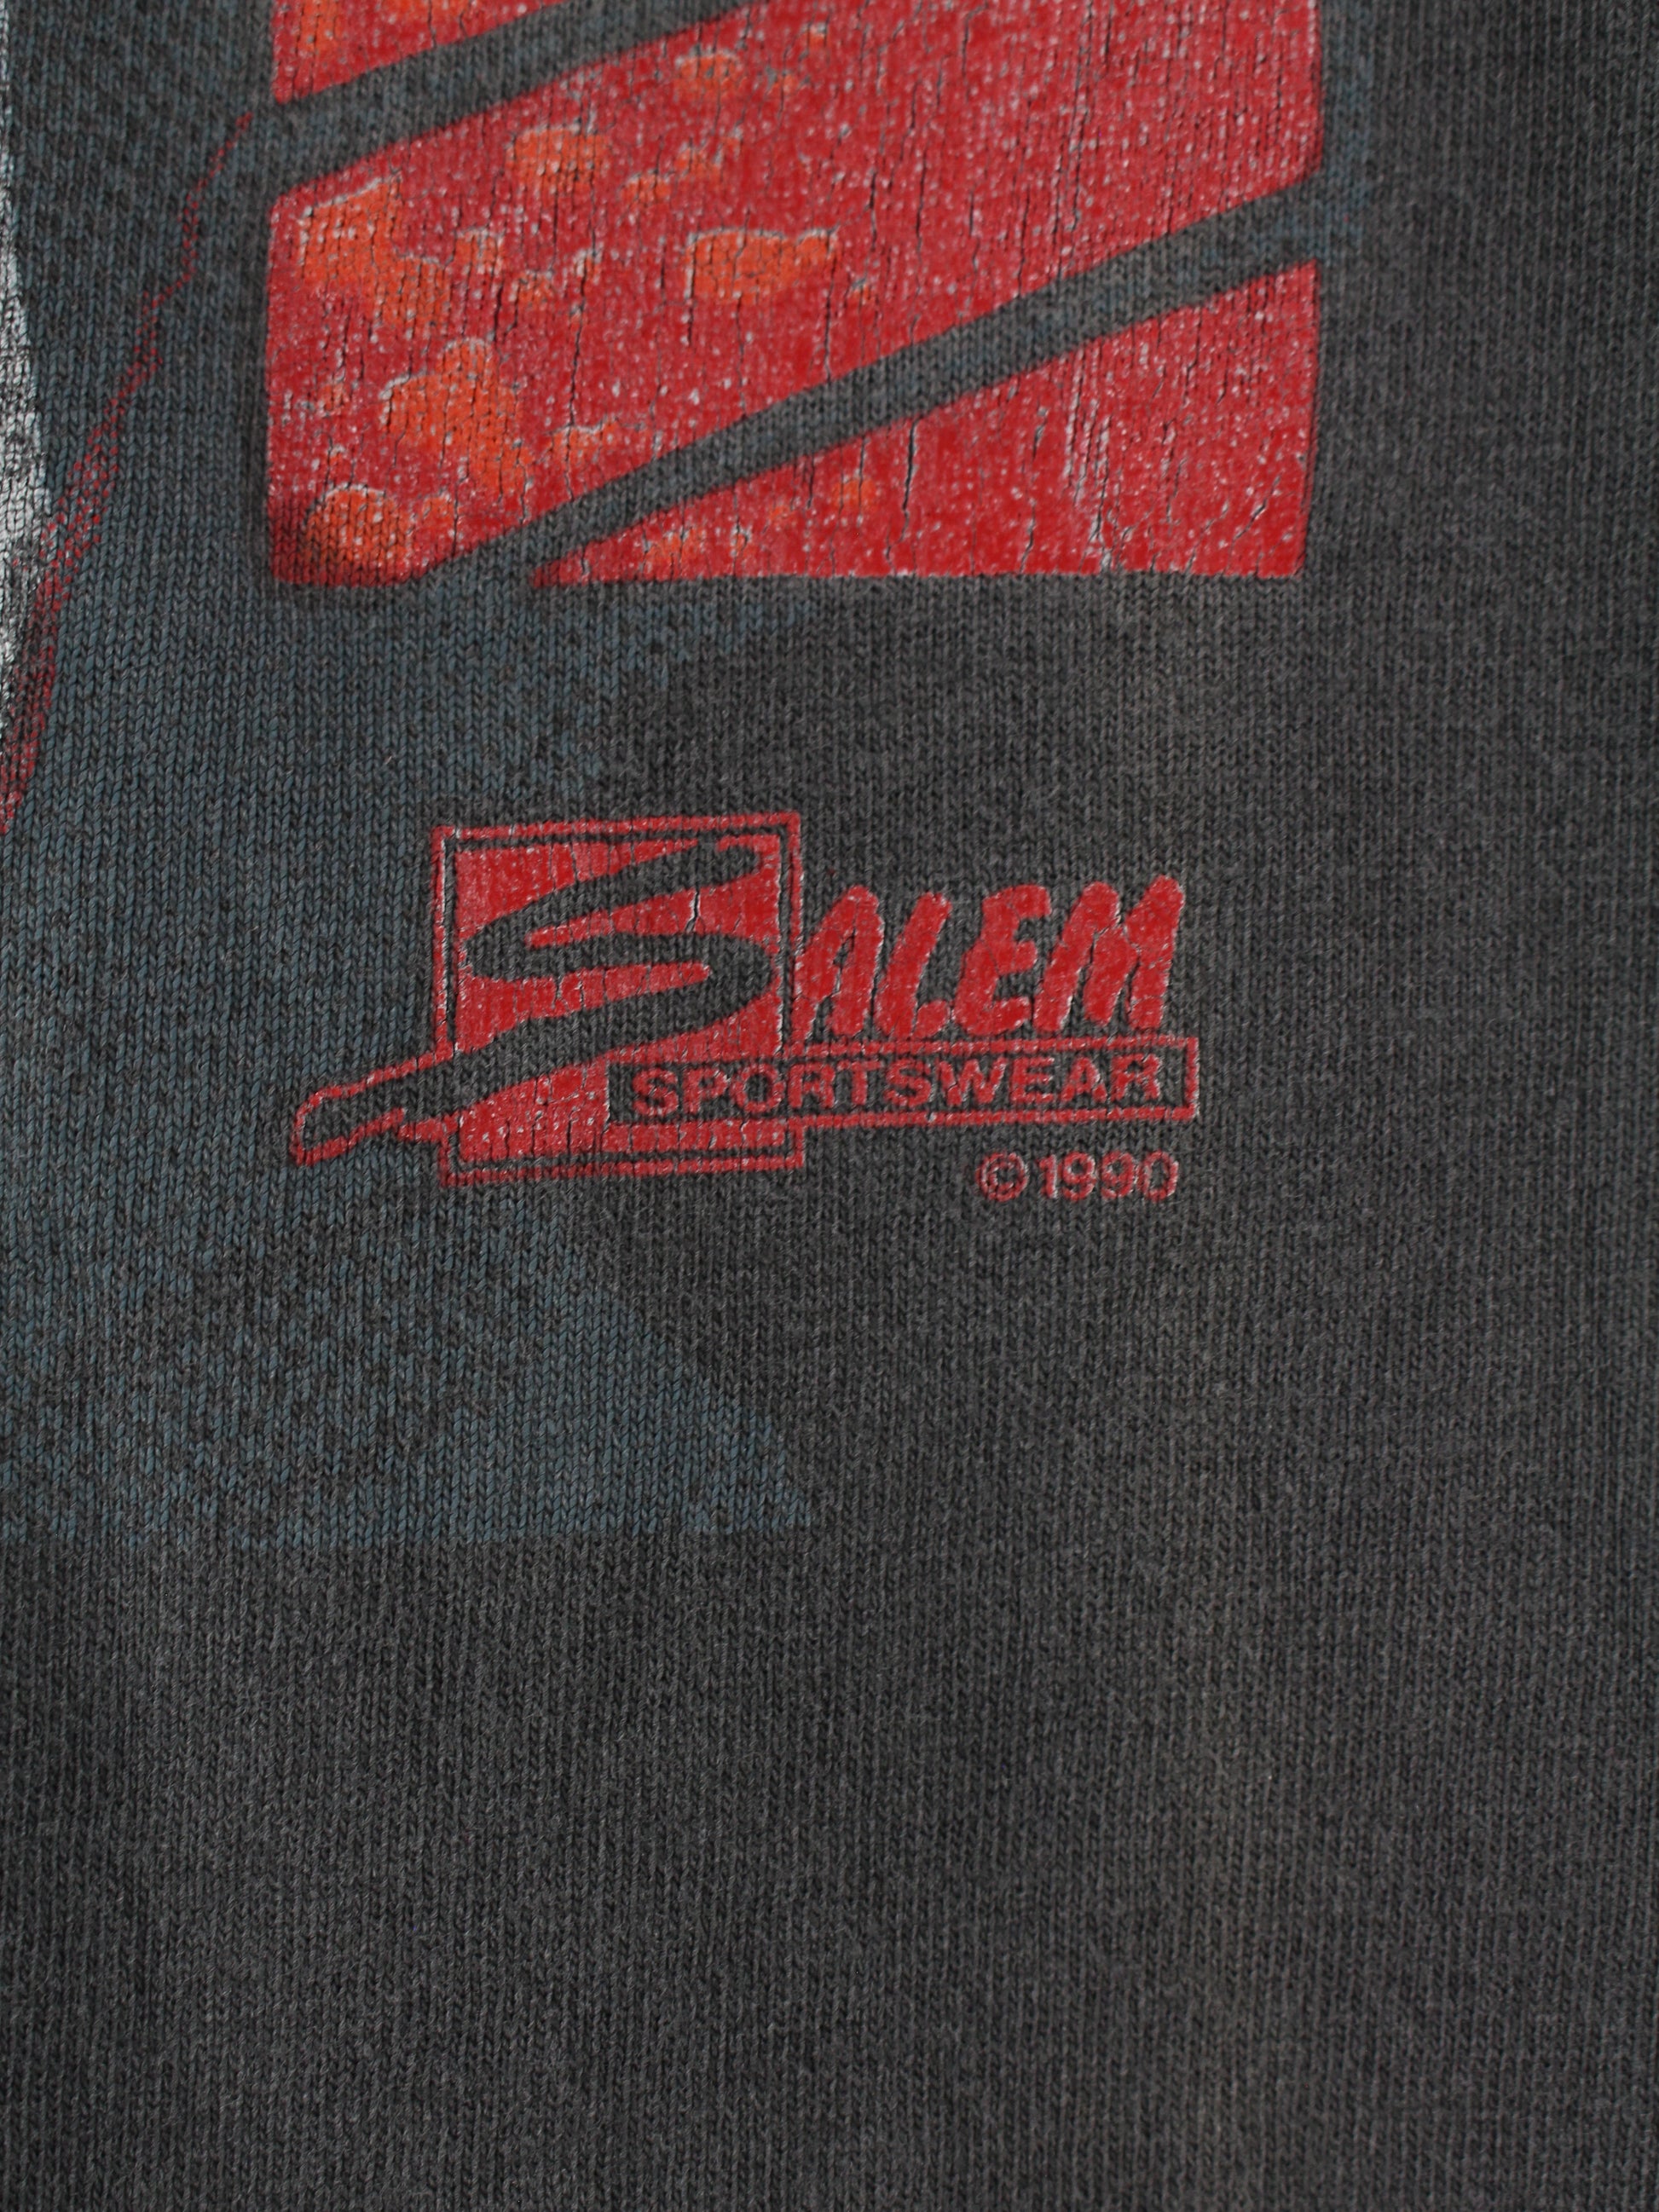 Salem Sportswear 1990 Michael Jordan T-Shirt Gray M – Peeces